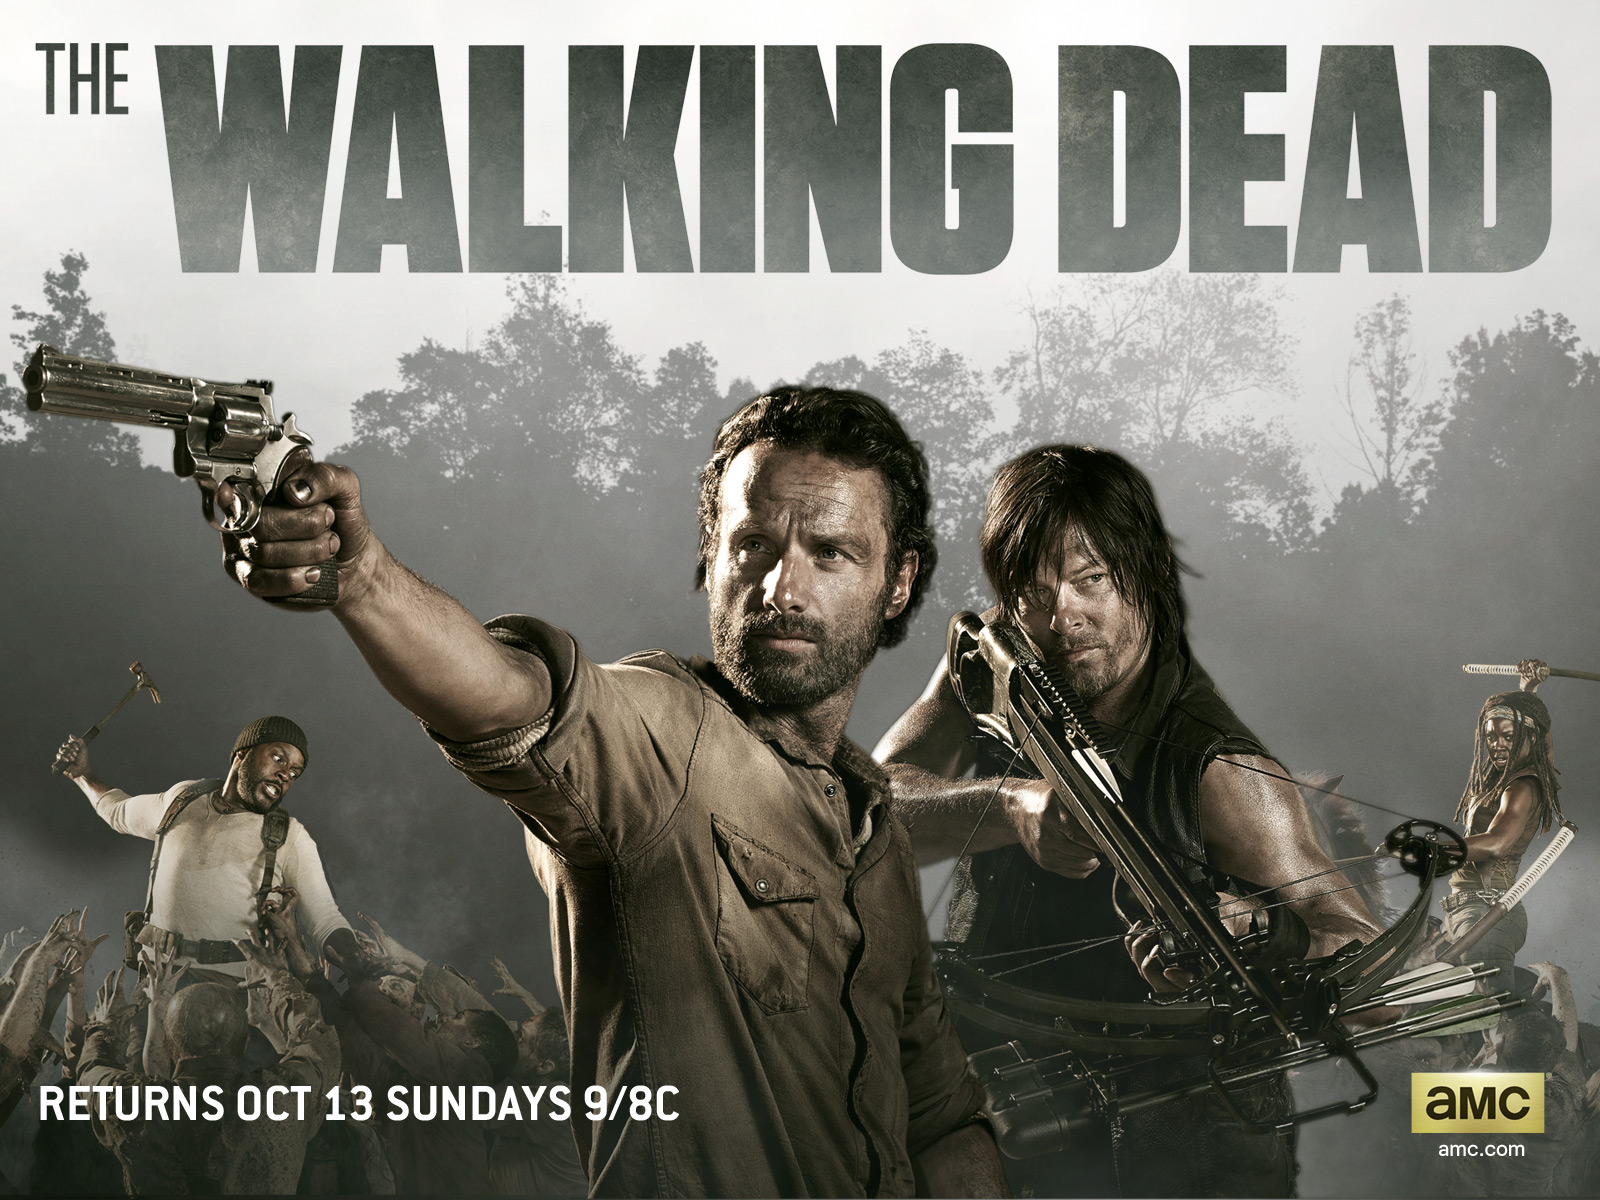 USD POLL : The Walking Dead: Favorite Episode from Season 4